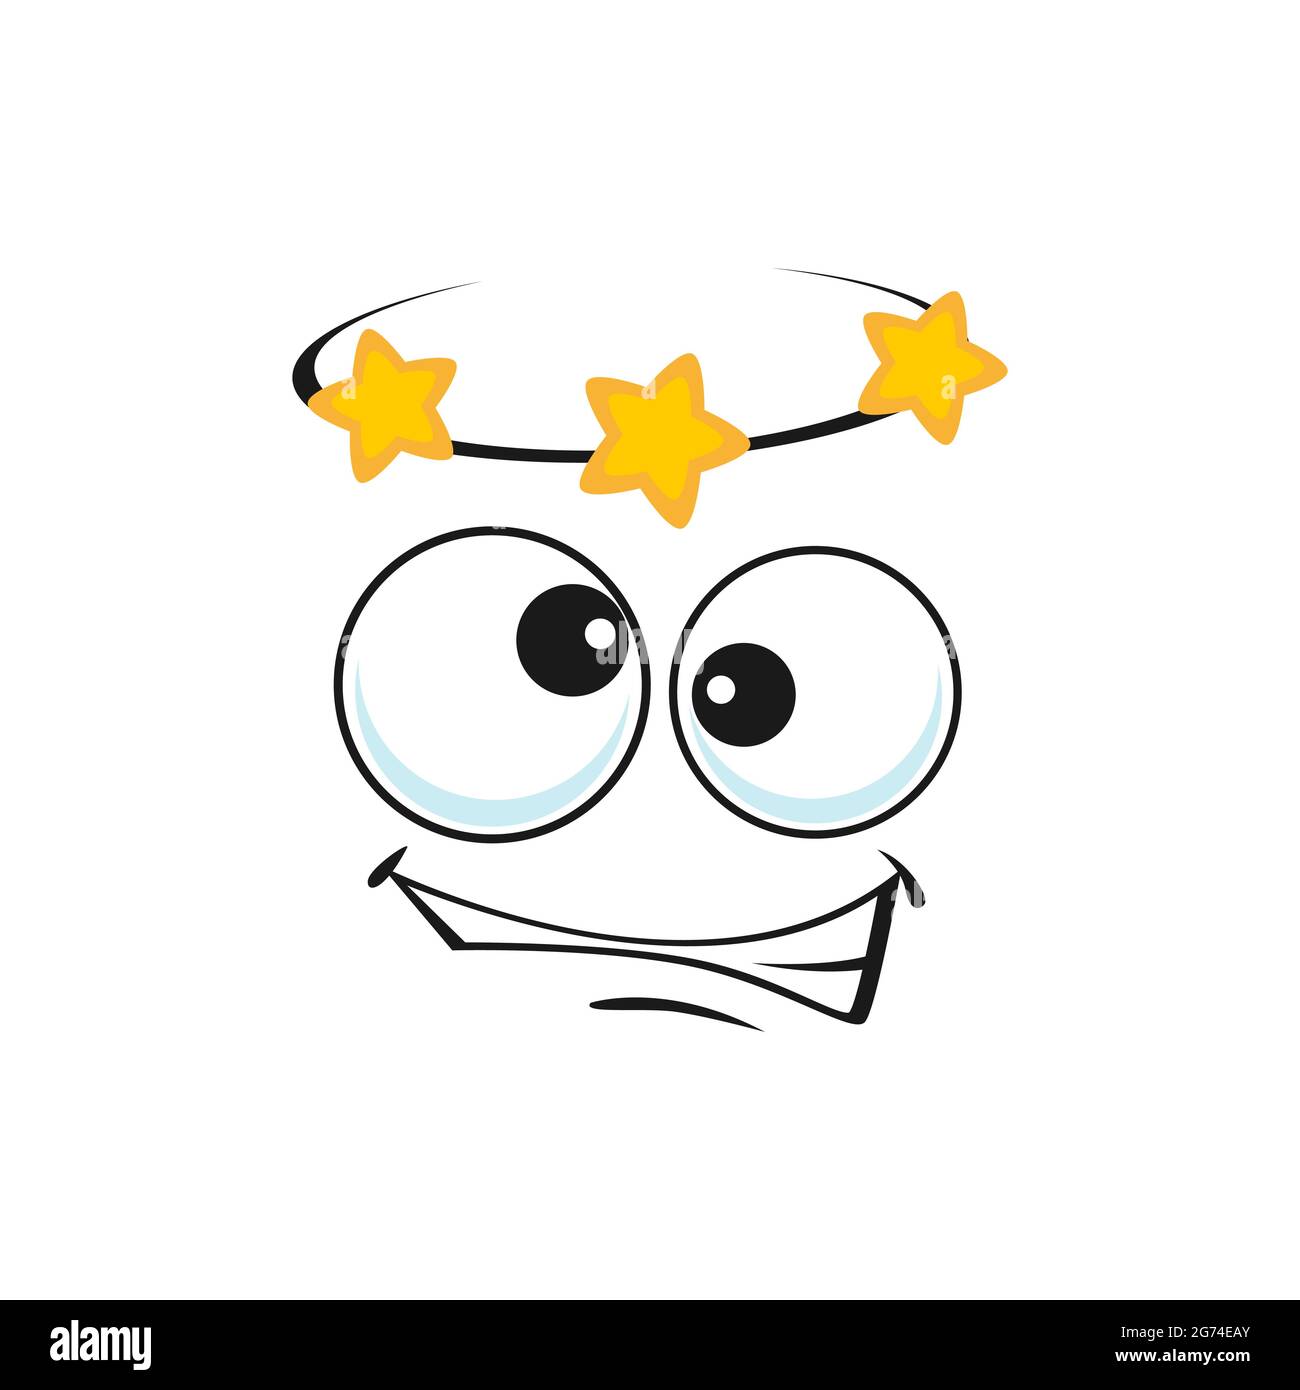 Cartoon schwindeliges Gesicht, Vektor-Schwindel Emoji mit Sternen über dem Kopf und schrägen Augen, Schwindel lustige Gesichtsausdruck. Menschliche Gefühle, Comic-Charakter em Stock Vektor